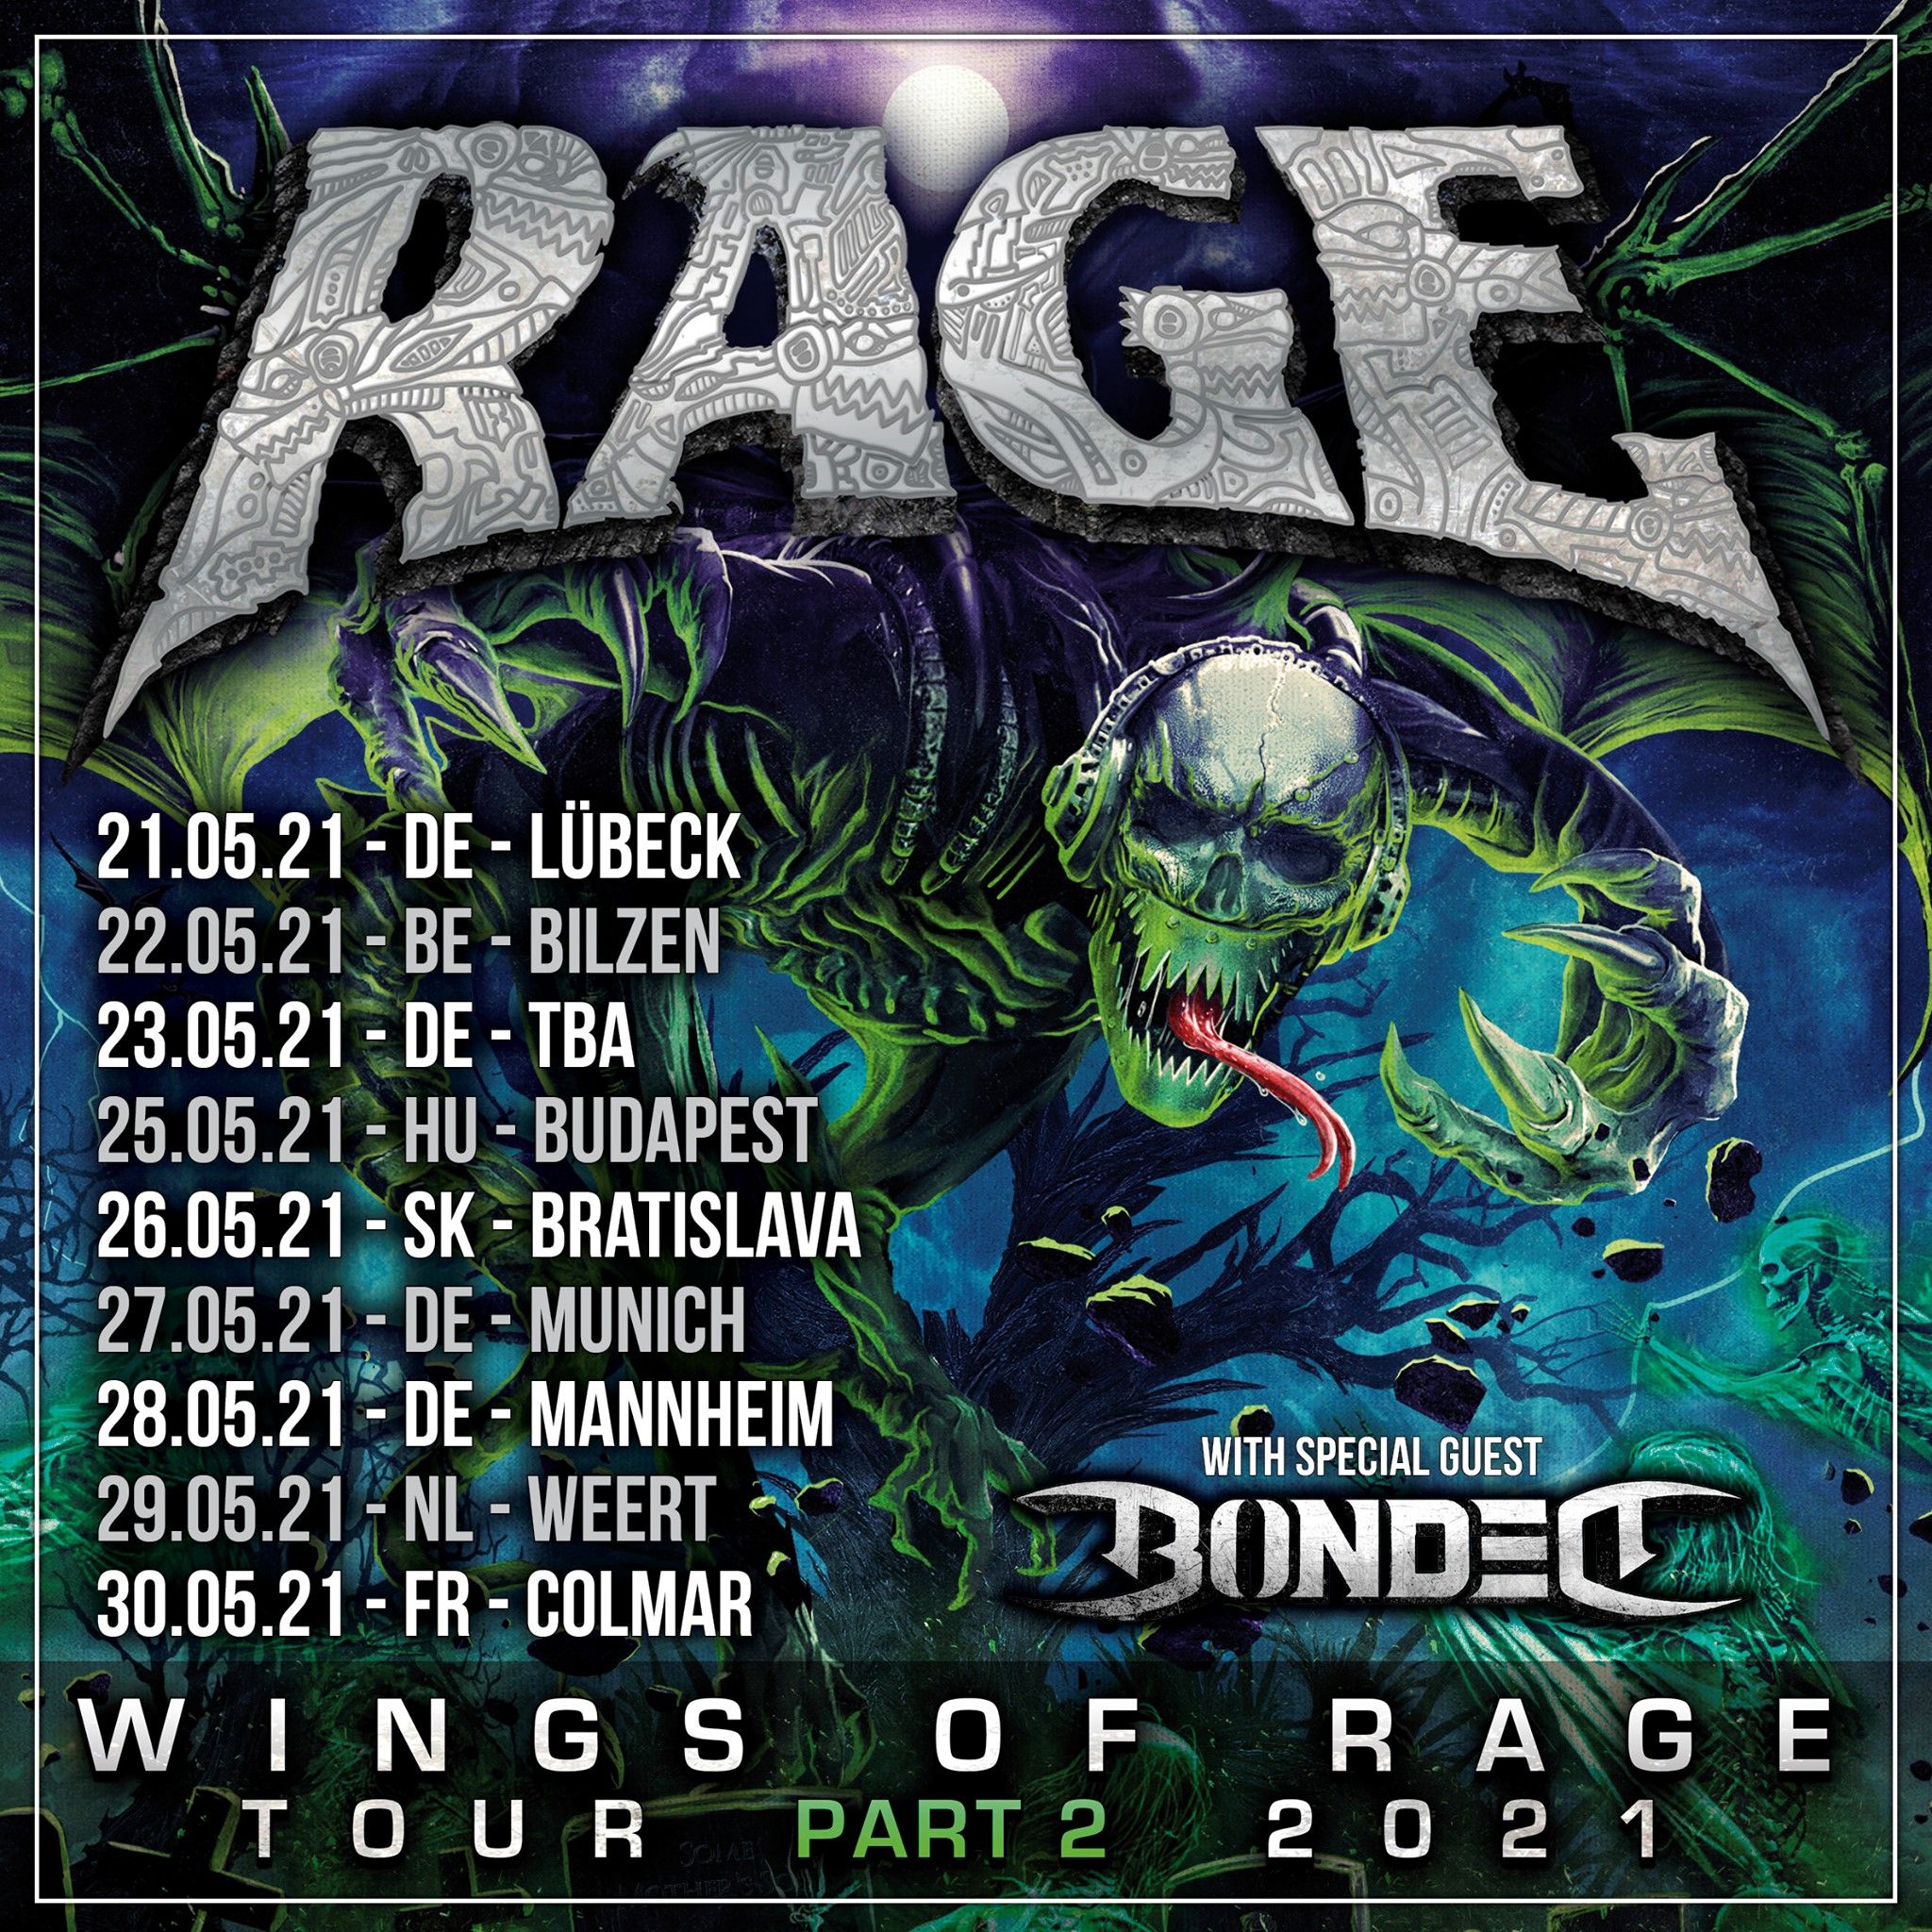 Neue "Wings Of Rage"-Tourdaten für Mai 2021 angekündigt